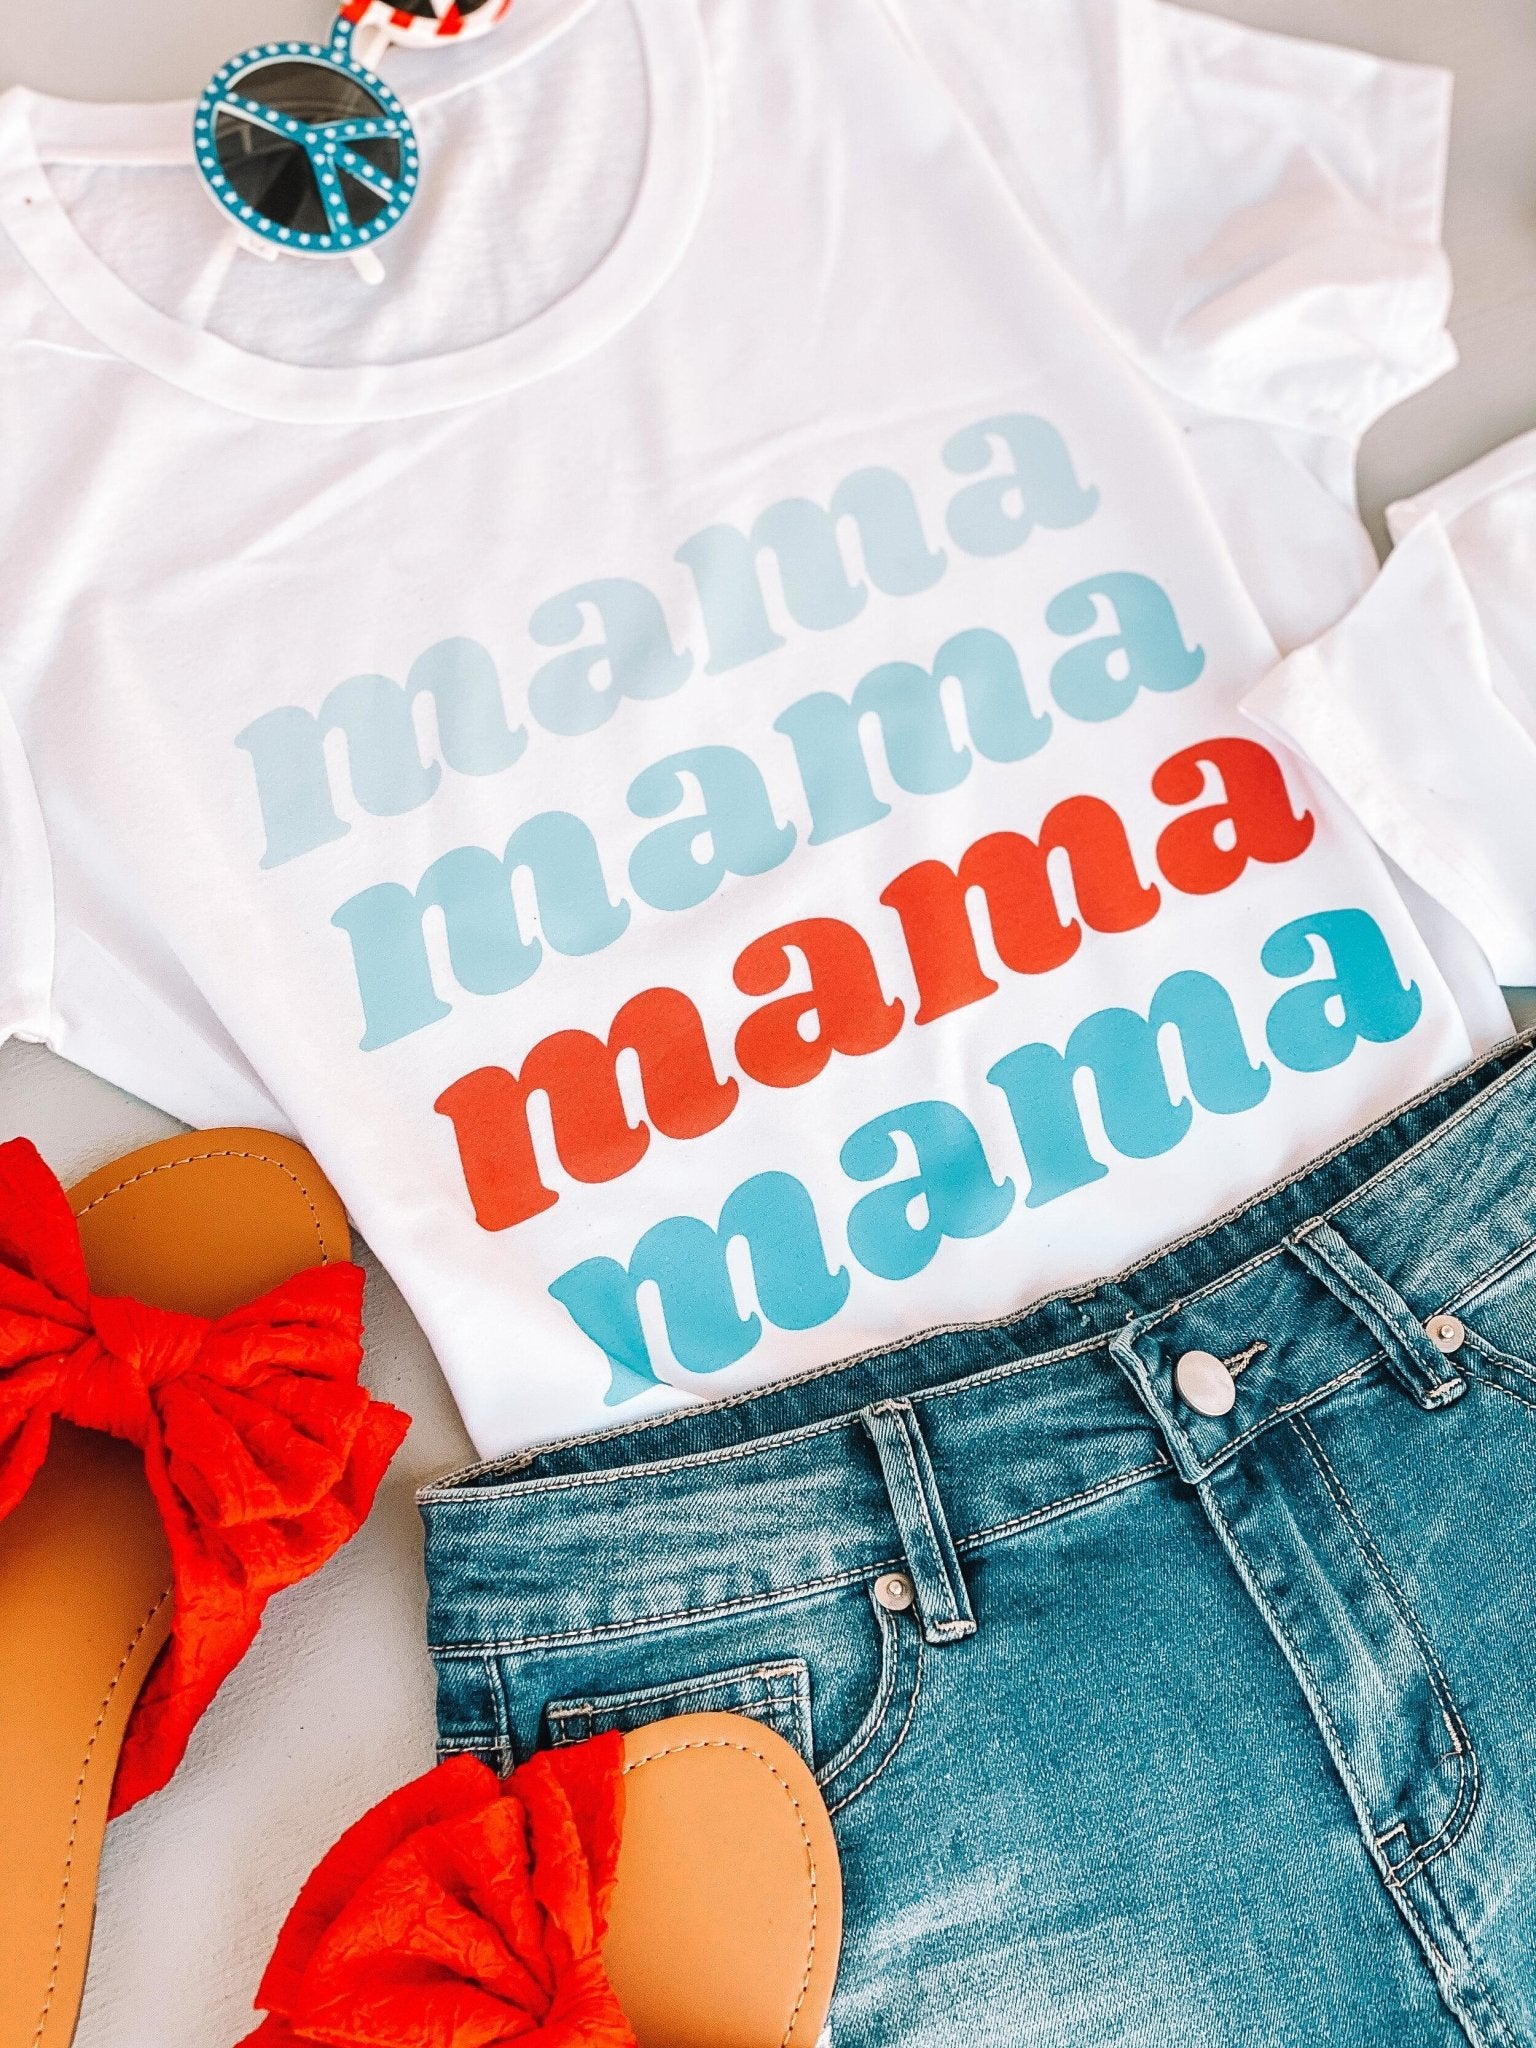 Americana Mama +Mini Matching Shirts - LITTLE MIA BELLA